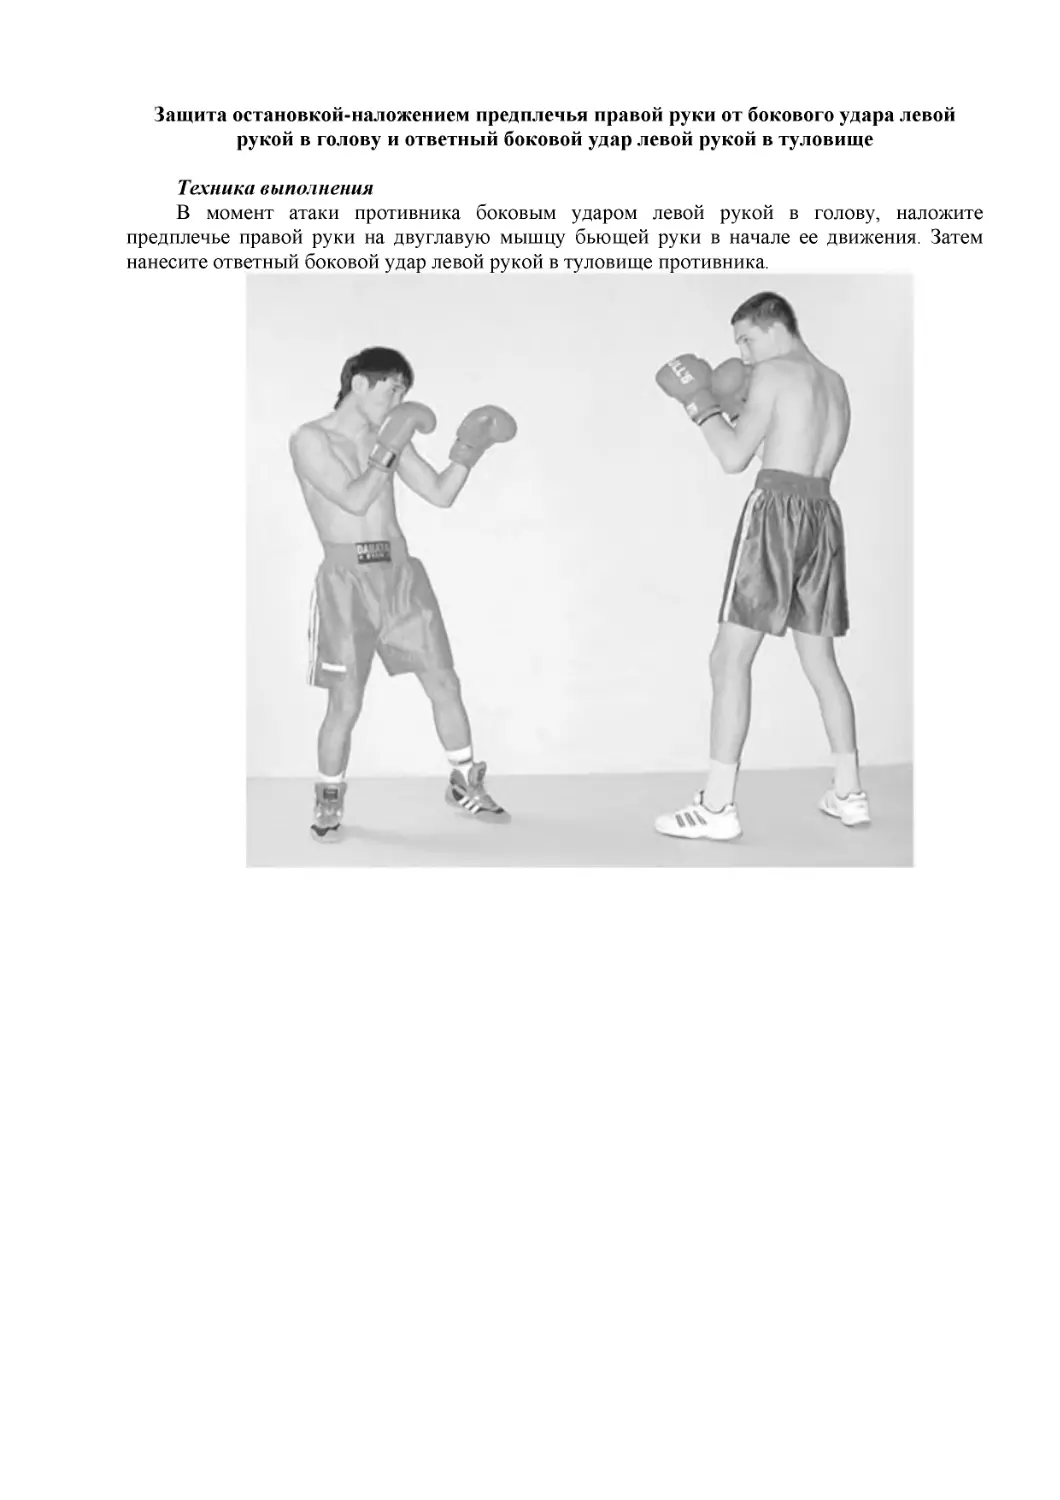 ﻿Защита остановкой-наложением предплечья правой руки от бокового удара левой рукой в голову и ответный боковой удар левой рукой в туловищ